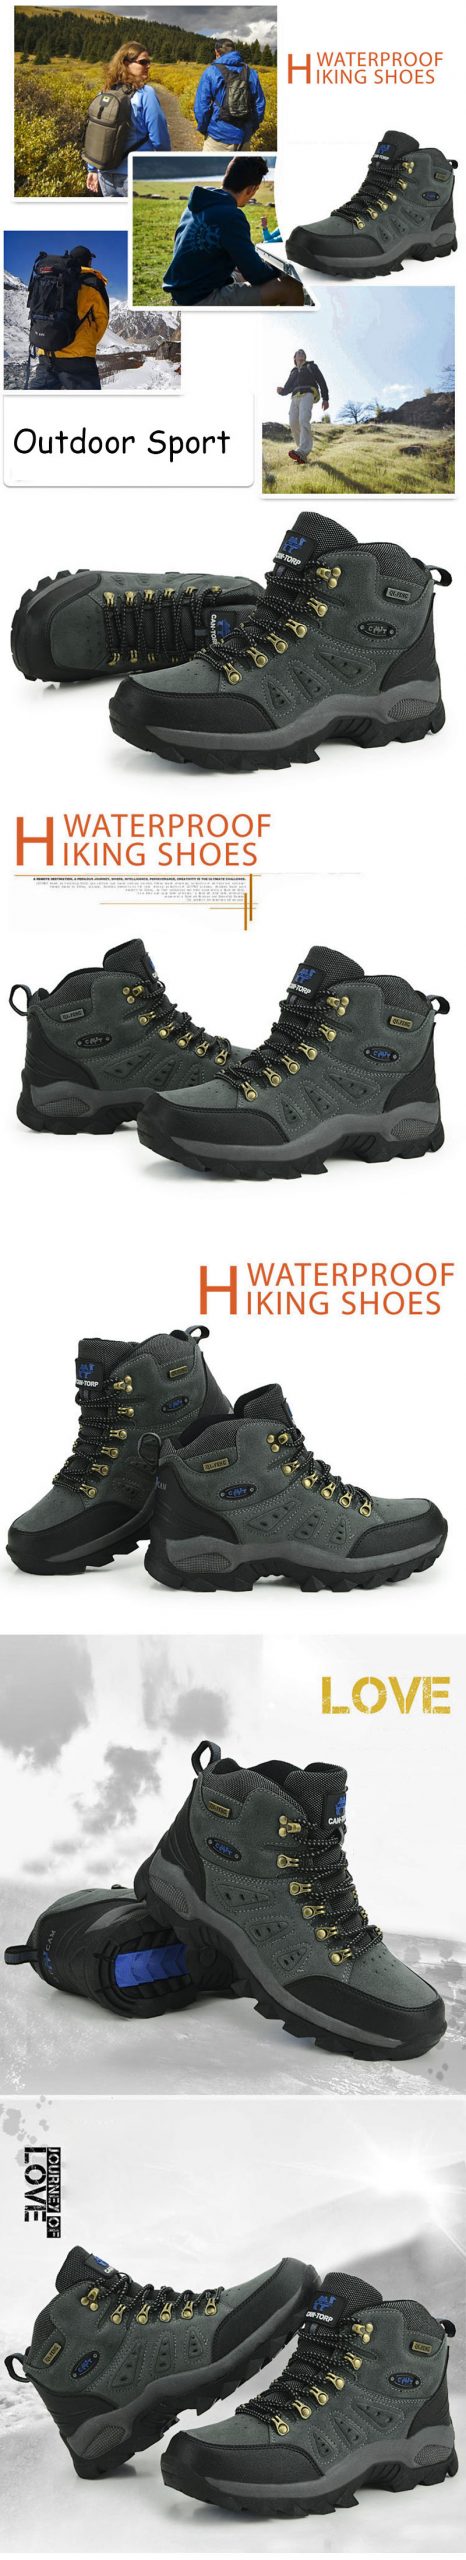 Outdoor Waterproof Hiking Boots Men Women Trekking Shoes Walking Climbing Hiking Shoes Mountain Sport Boots Hunting Men Sneakers